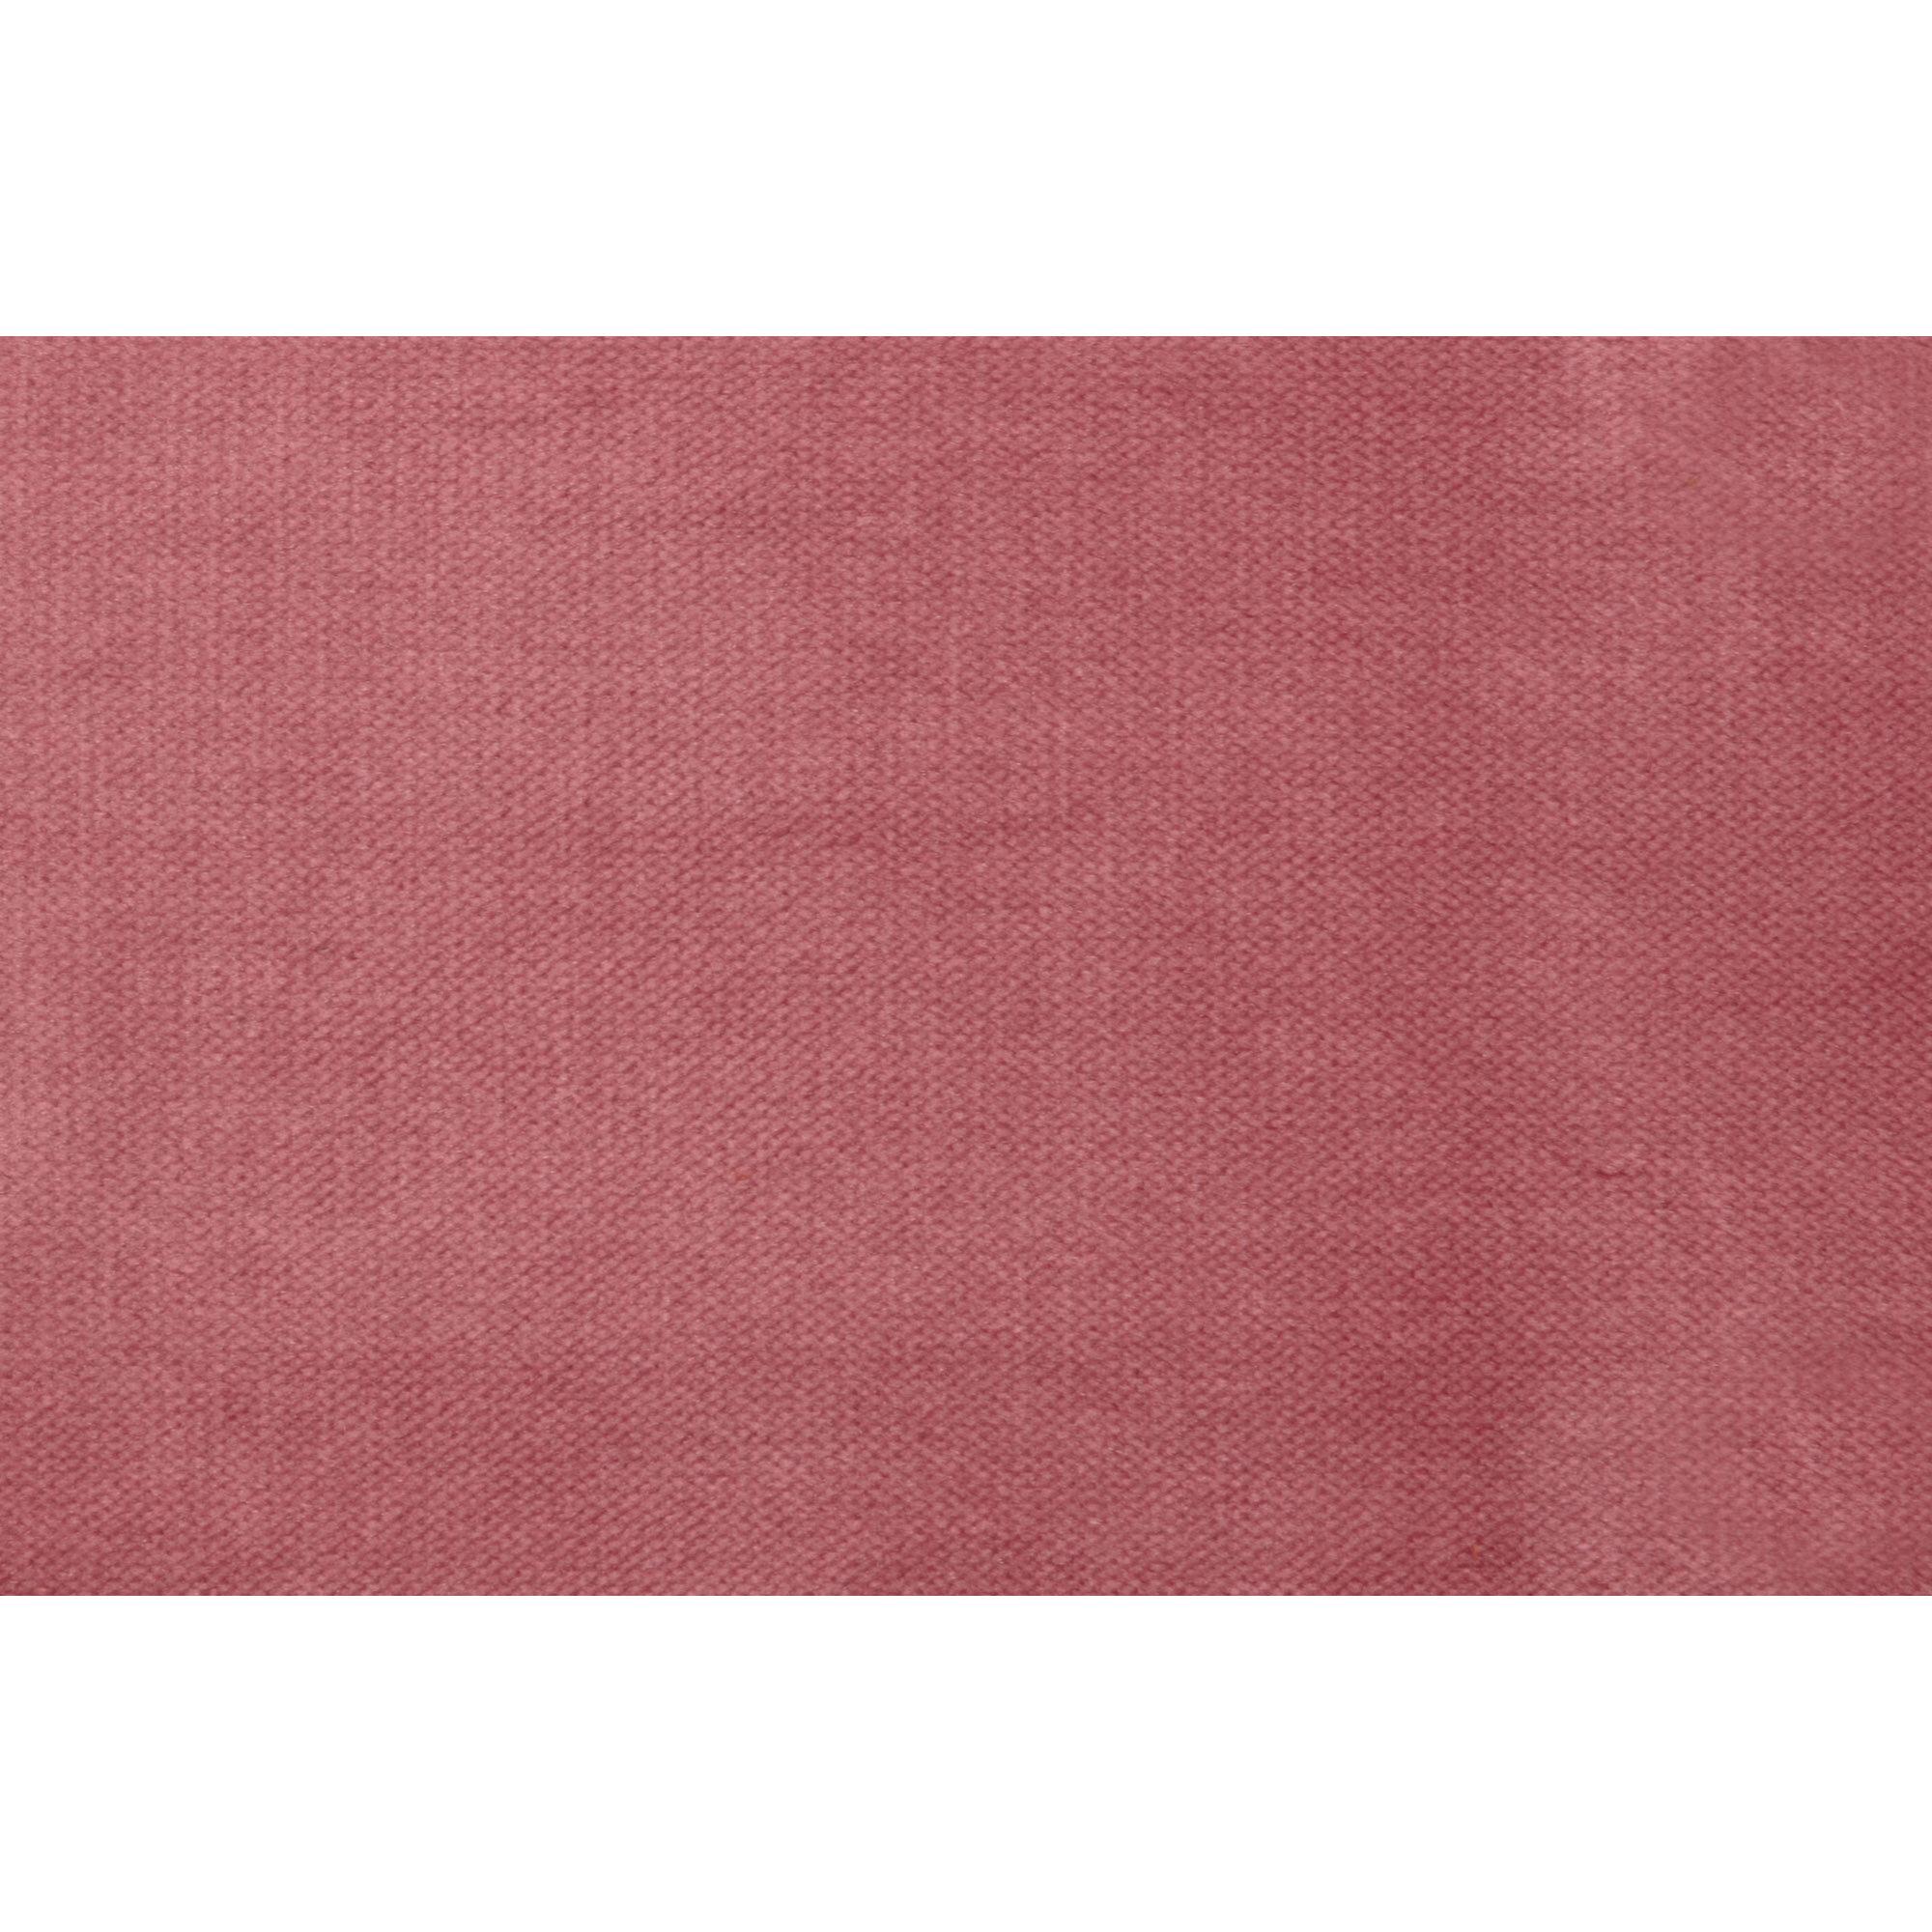  Rodeo Lænestol Velour - Pink fra BePureHome i Velour (Varenr: 800541-73)